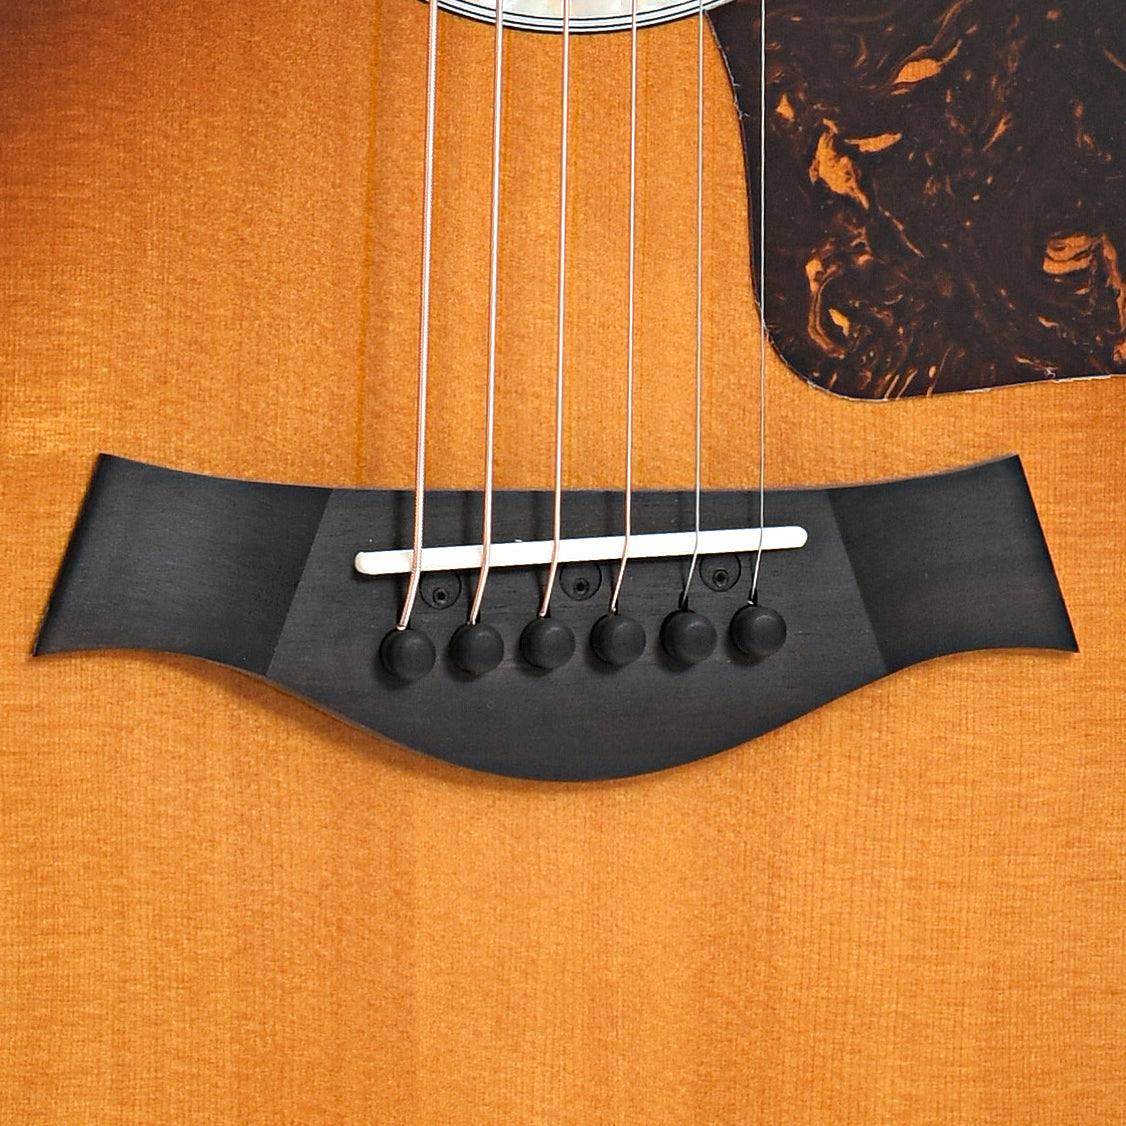 Bridge of Taylor 414ce-R Acoustic Guitar, Tobacco Sunburst